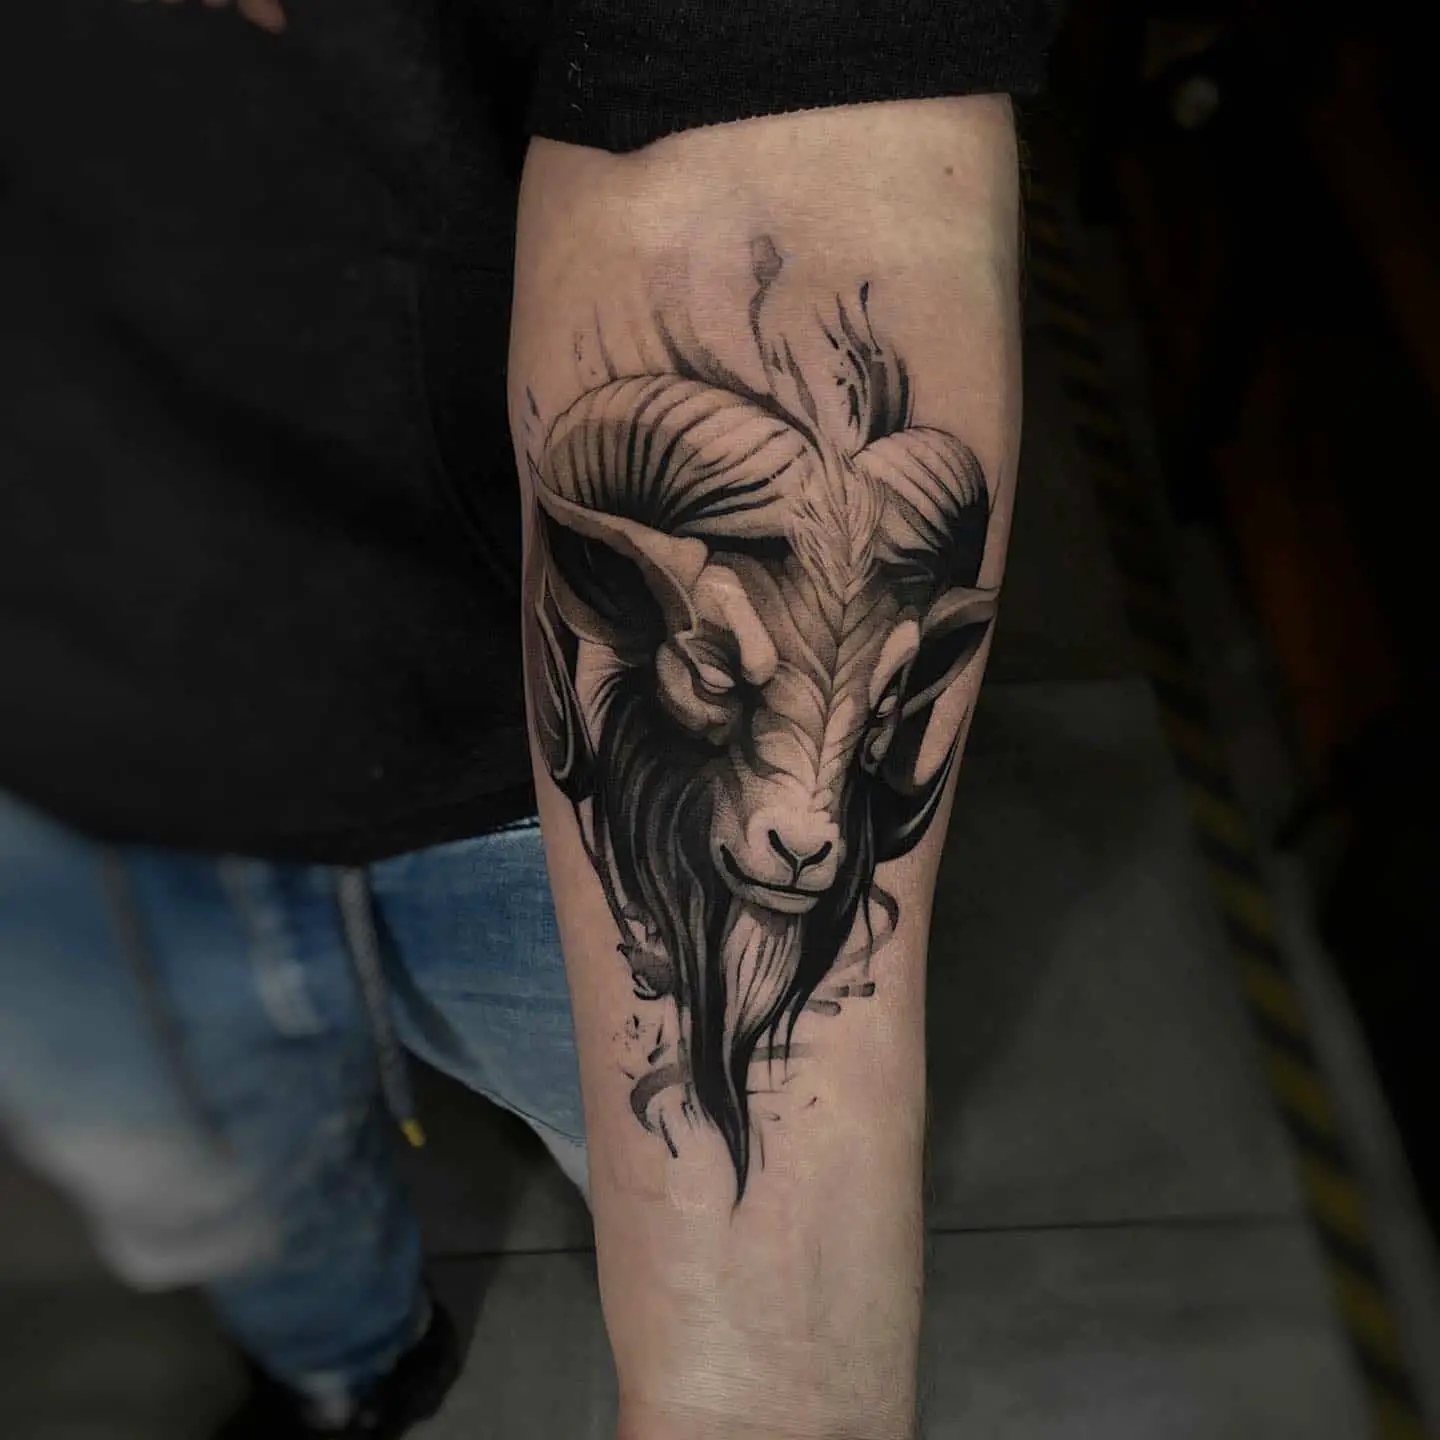 Aries tattoo by frost tattoo